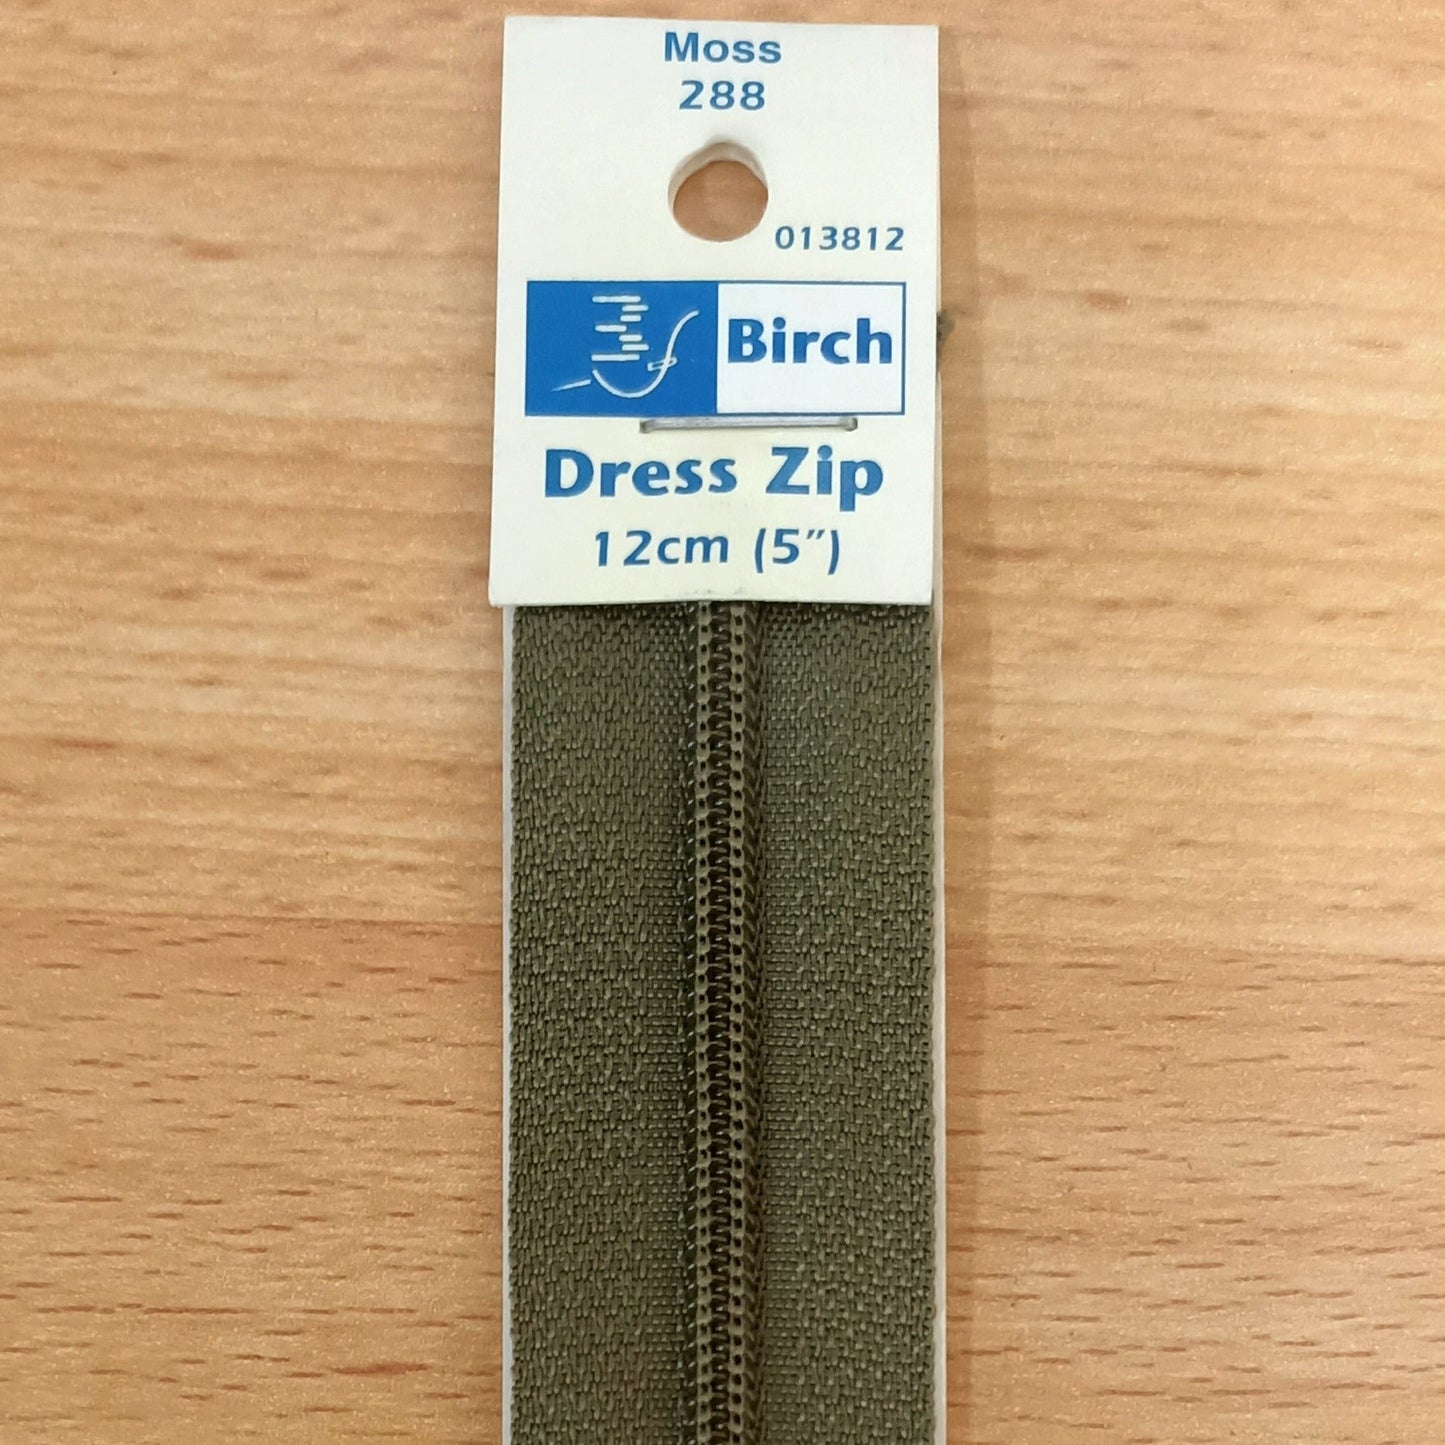 Dress Zip 51cm (20")